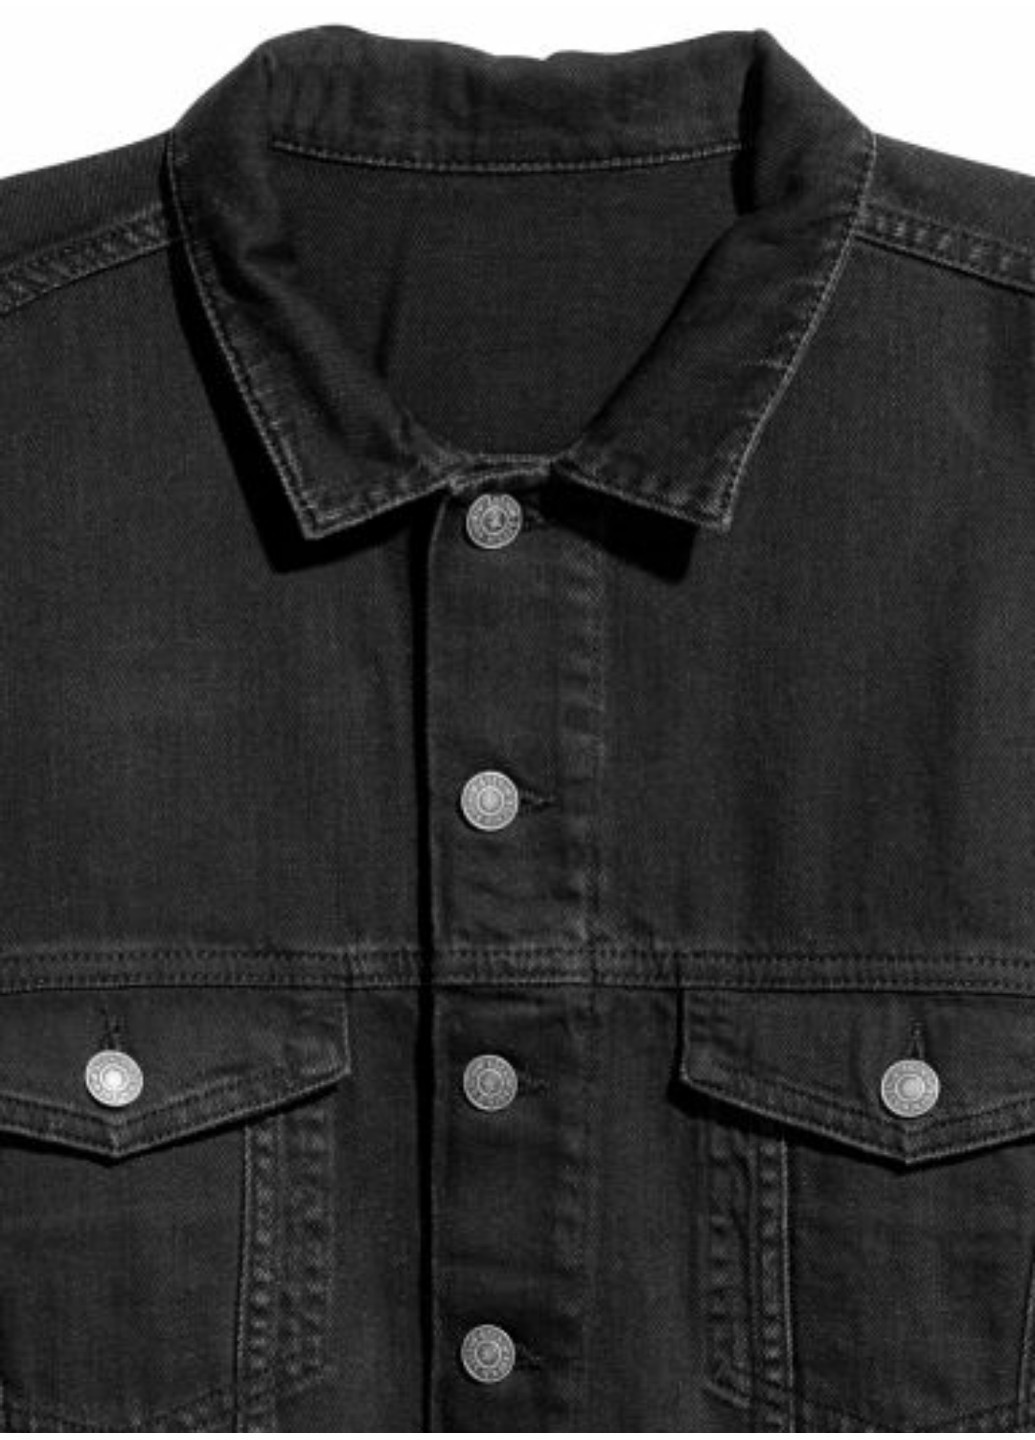 Черная демисезонная женская джинсовая куртка оверсайз н&м (56022) xs черная H&M